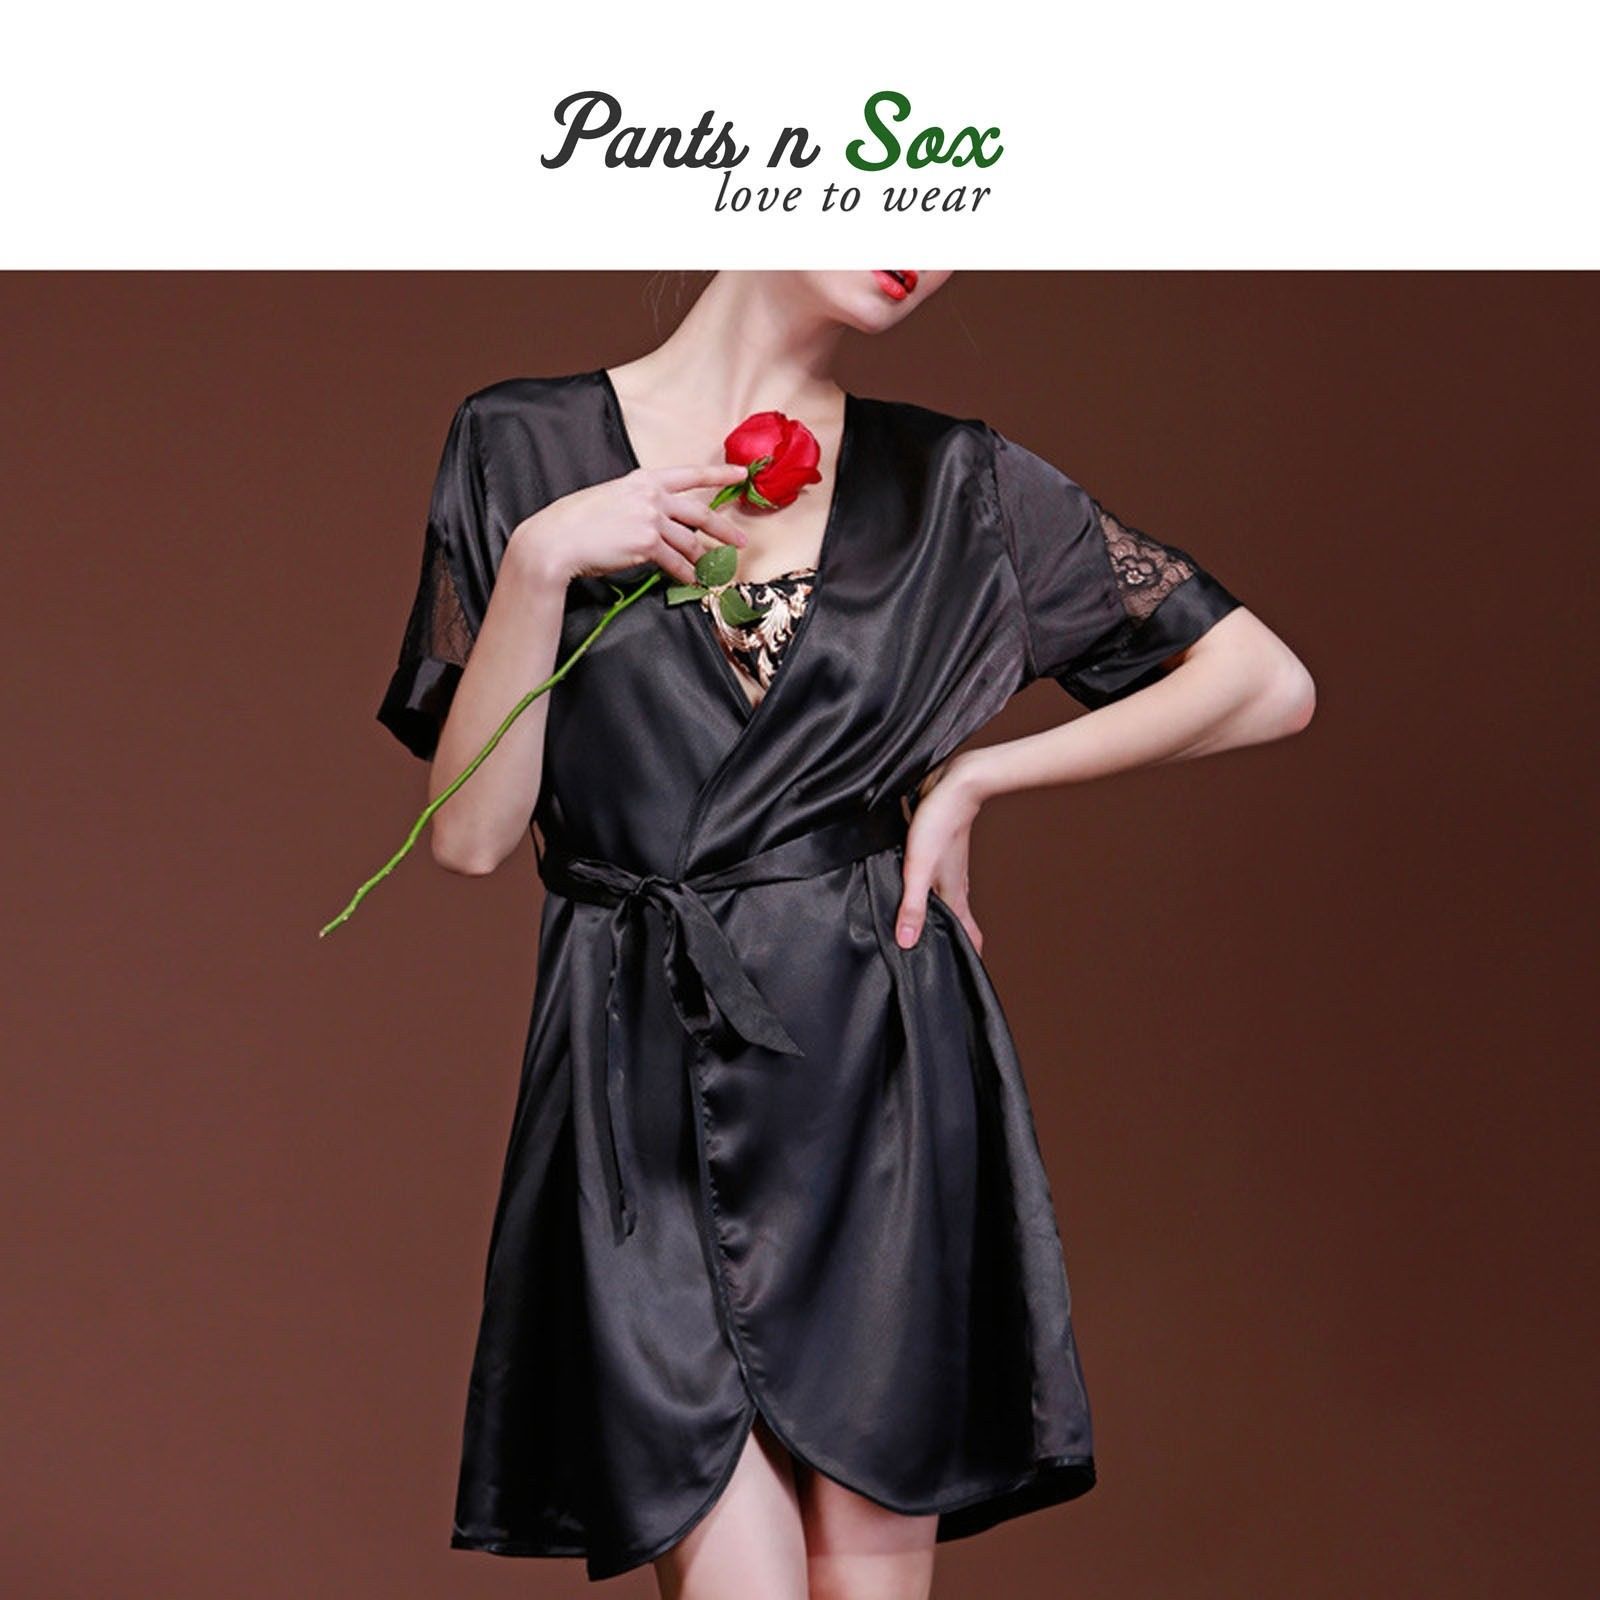 Womens Plain Black Luxury Silk Feel Chemise Nightie Ladies Sleepwear 8 10 Gift - Pantsnsox